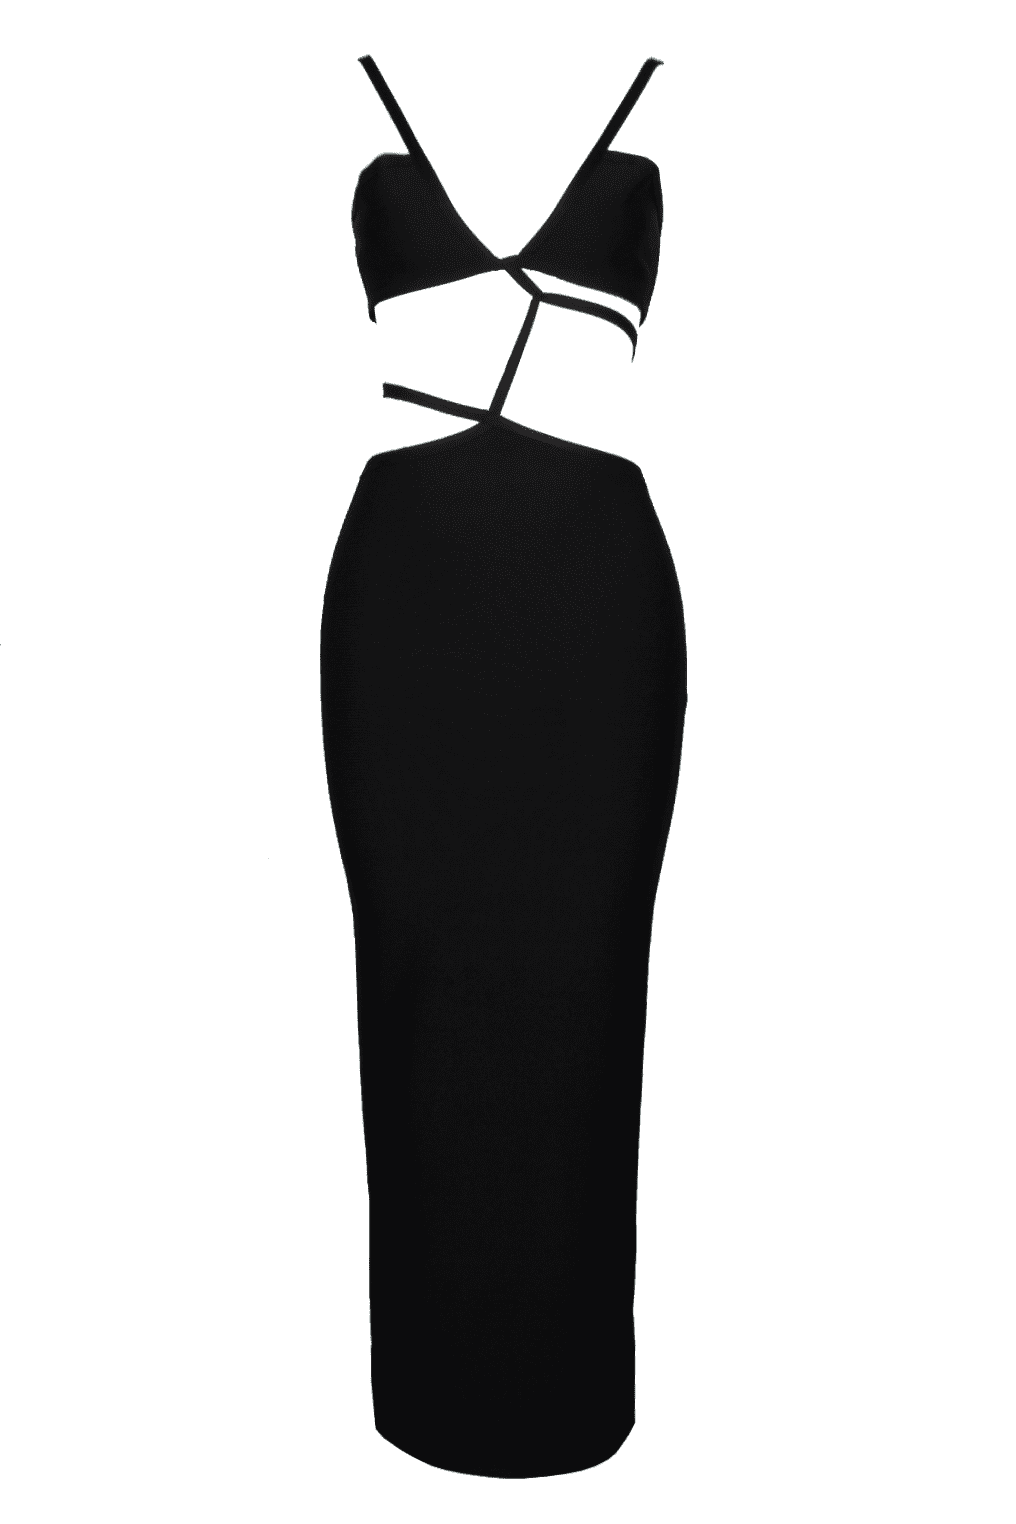 Cache Cut Out Bandage Dress - Black (Final Sale).